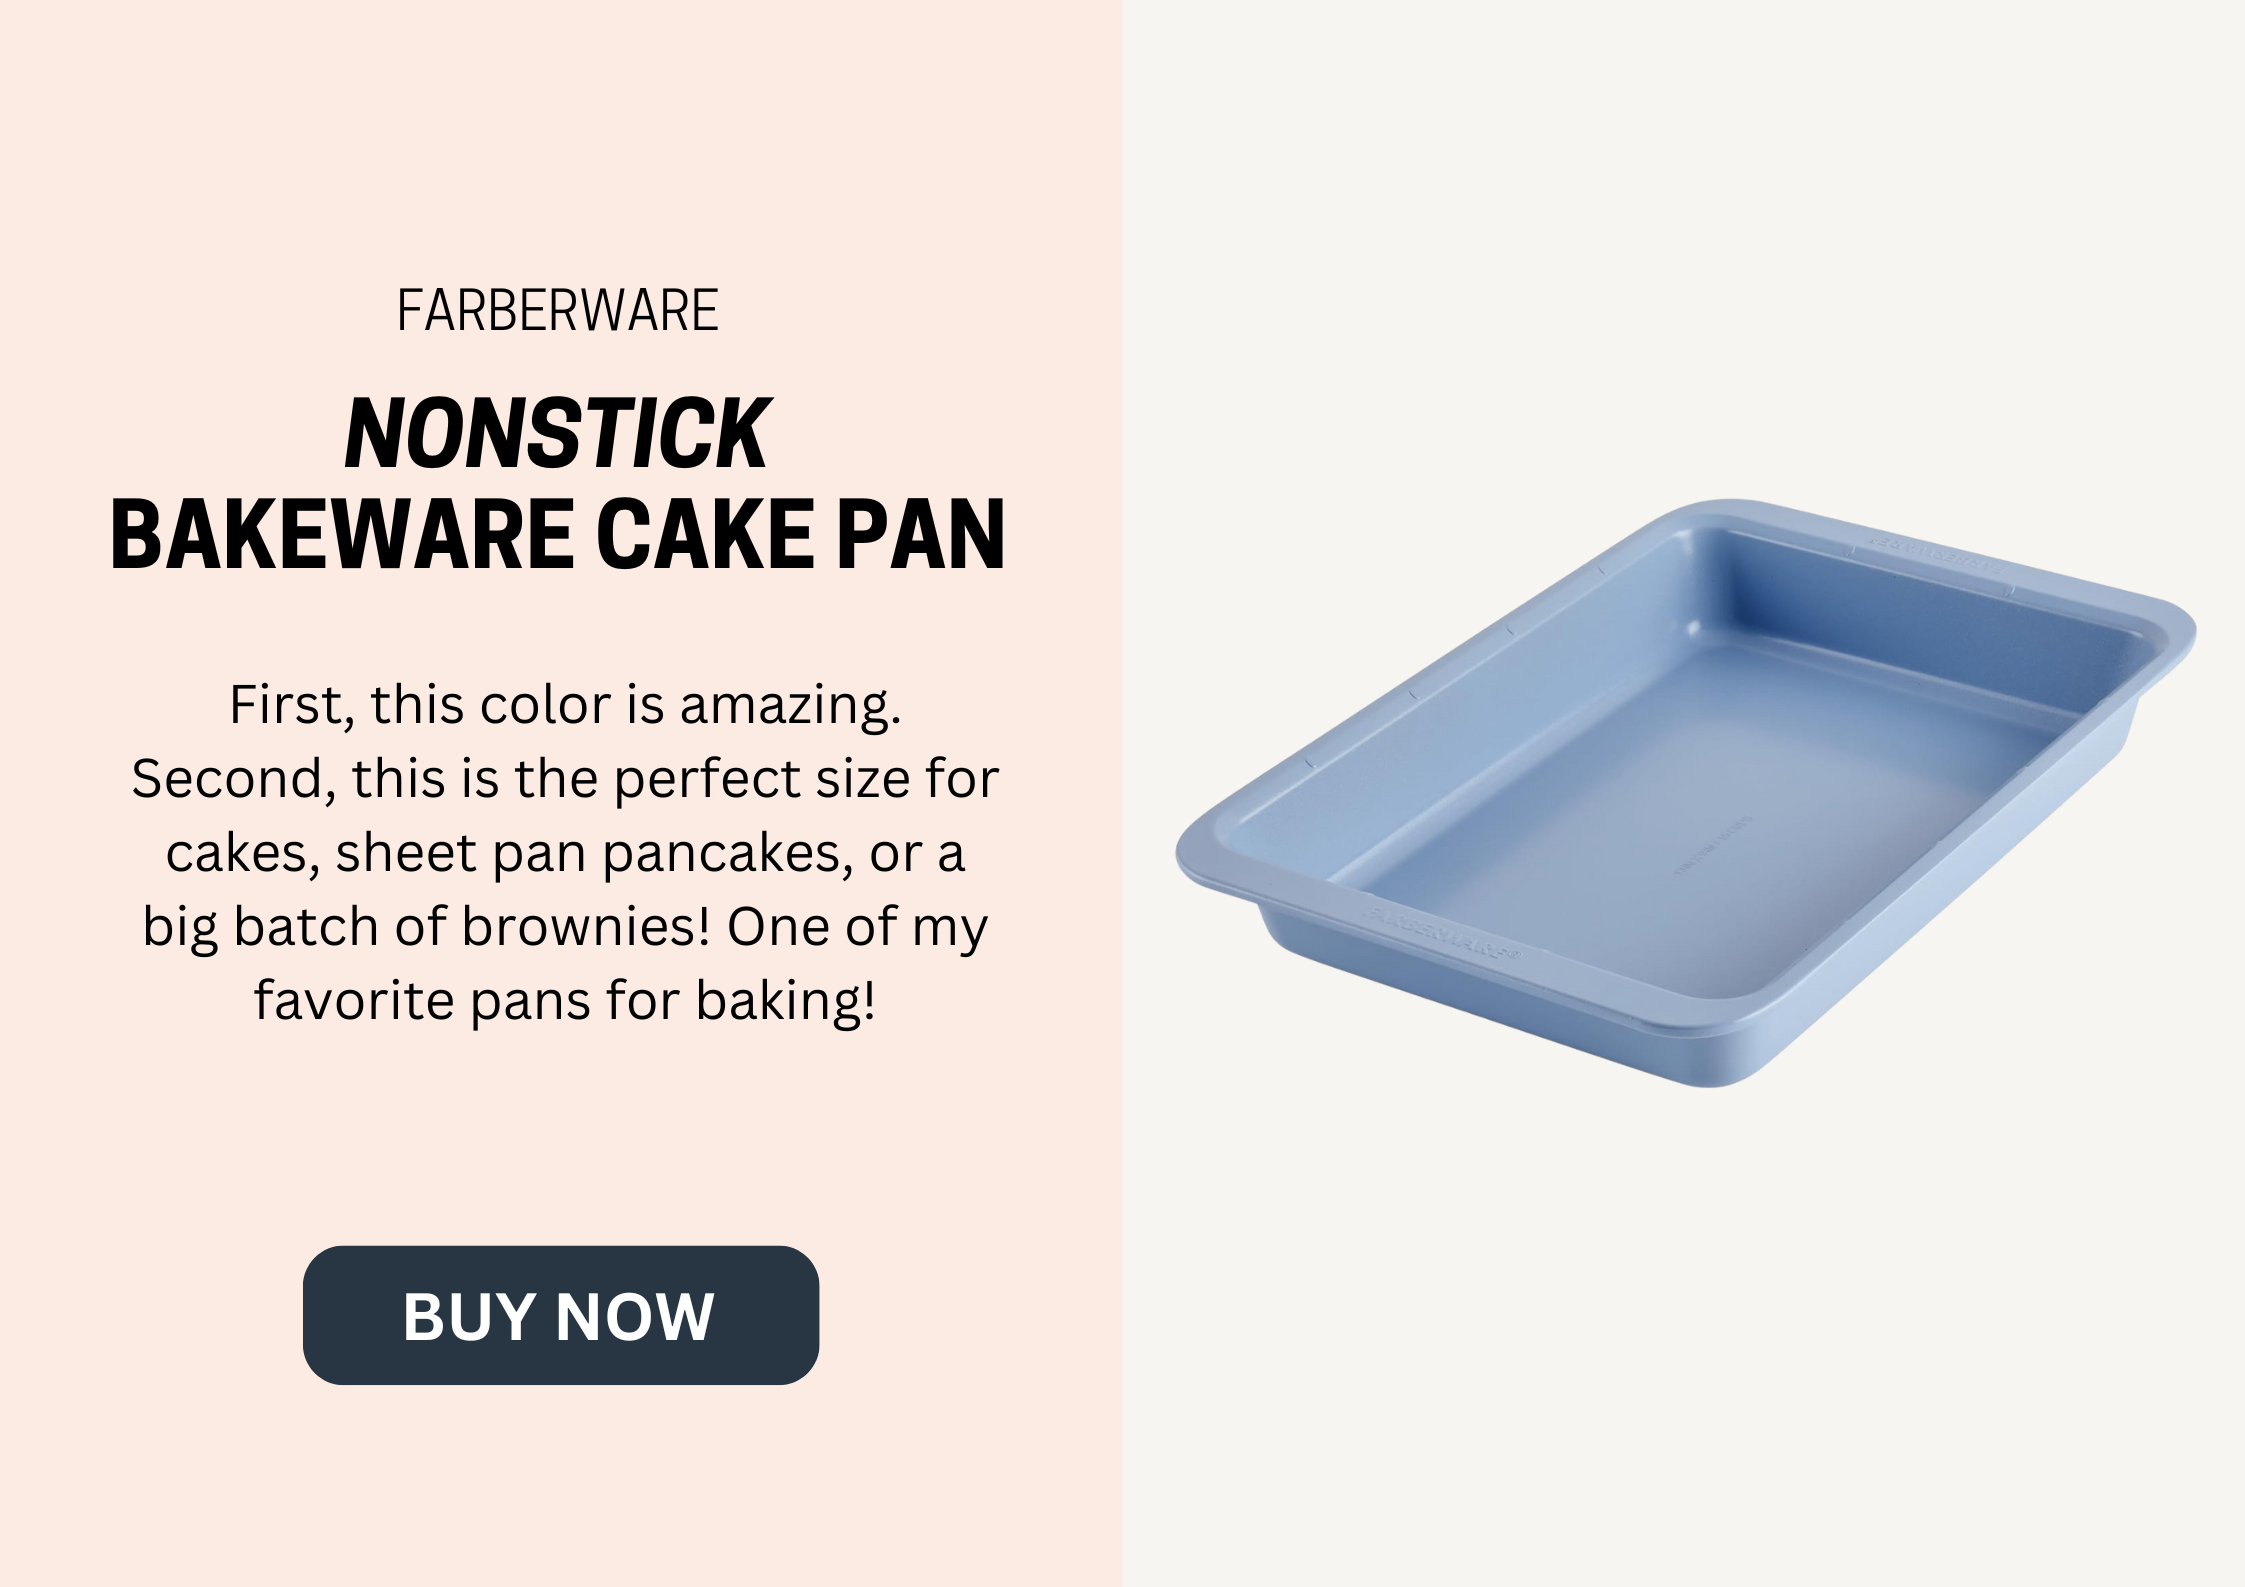 Nonstick cake pan